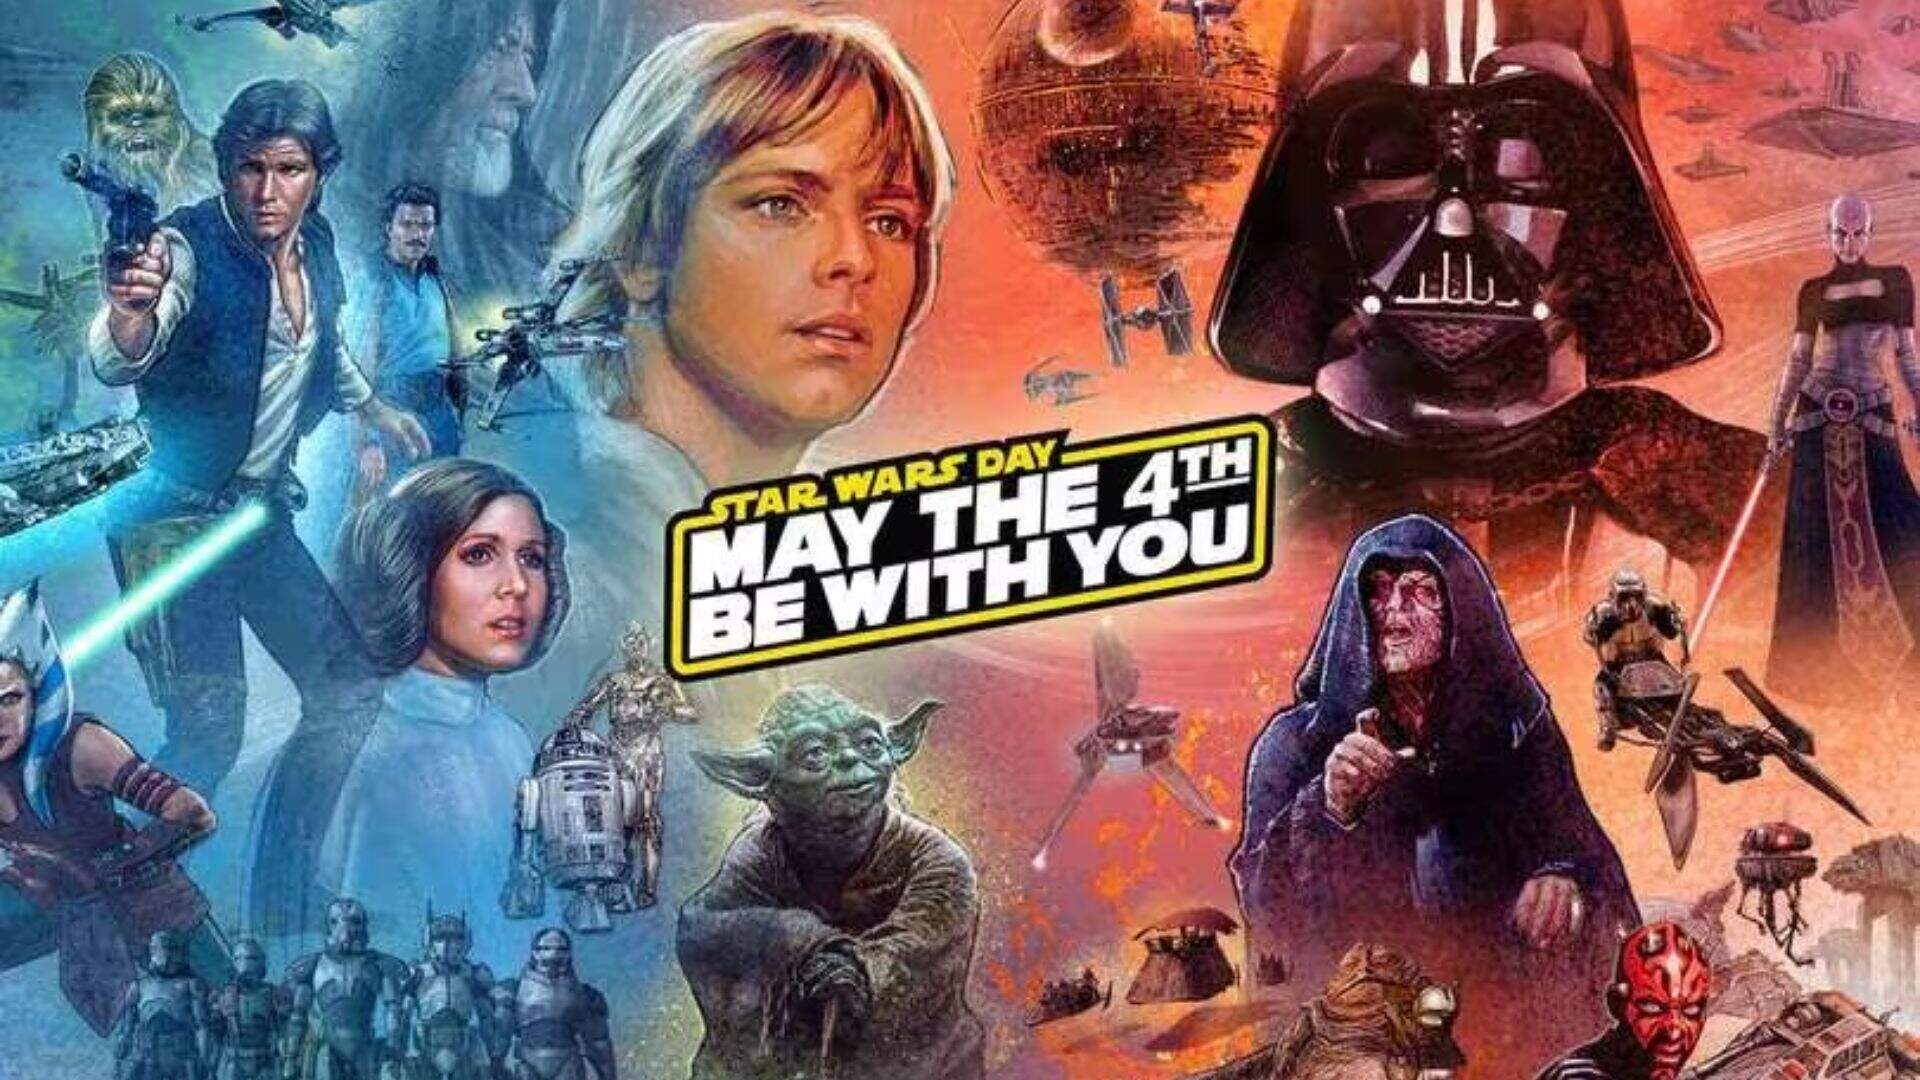 Vader imbatível e look ‘mágico’ do Luke: no Dia de Star Wars, fãs falam de personagens favoritos